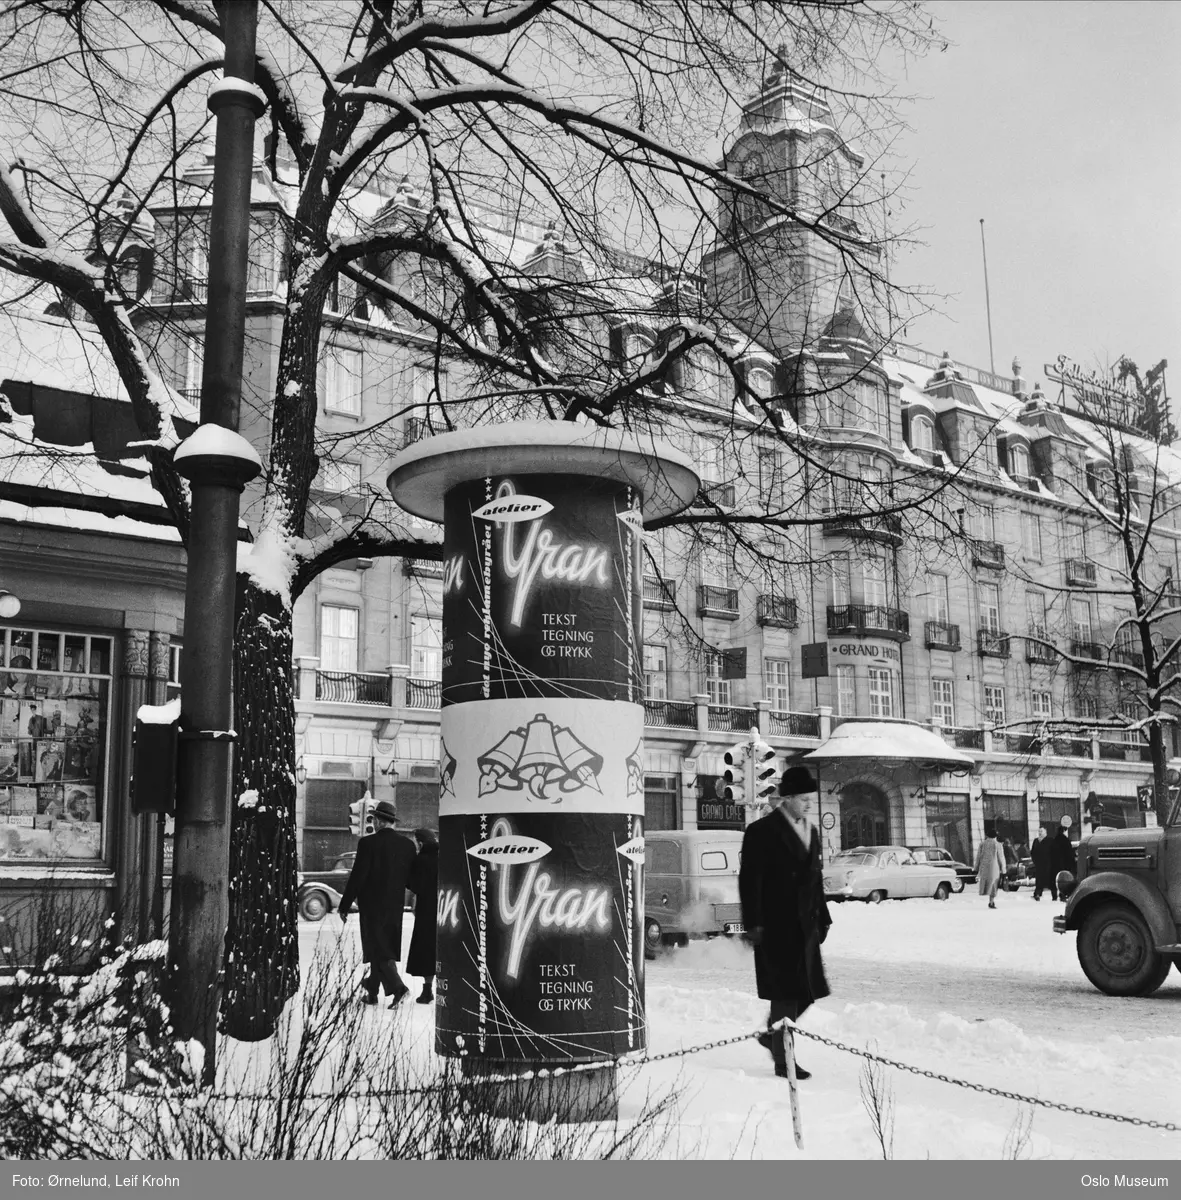 reklamesøyle, reklame for Atelier Yran, kiosk, Grand Hotel, biler, mennesker, snø